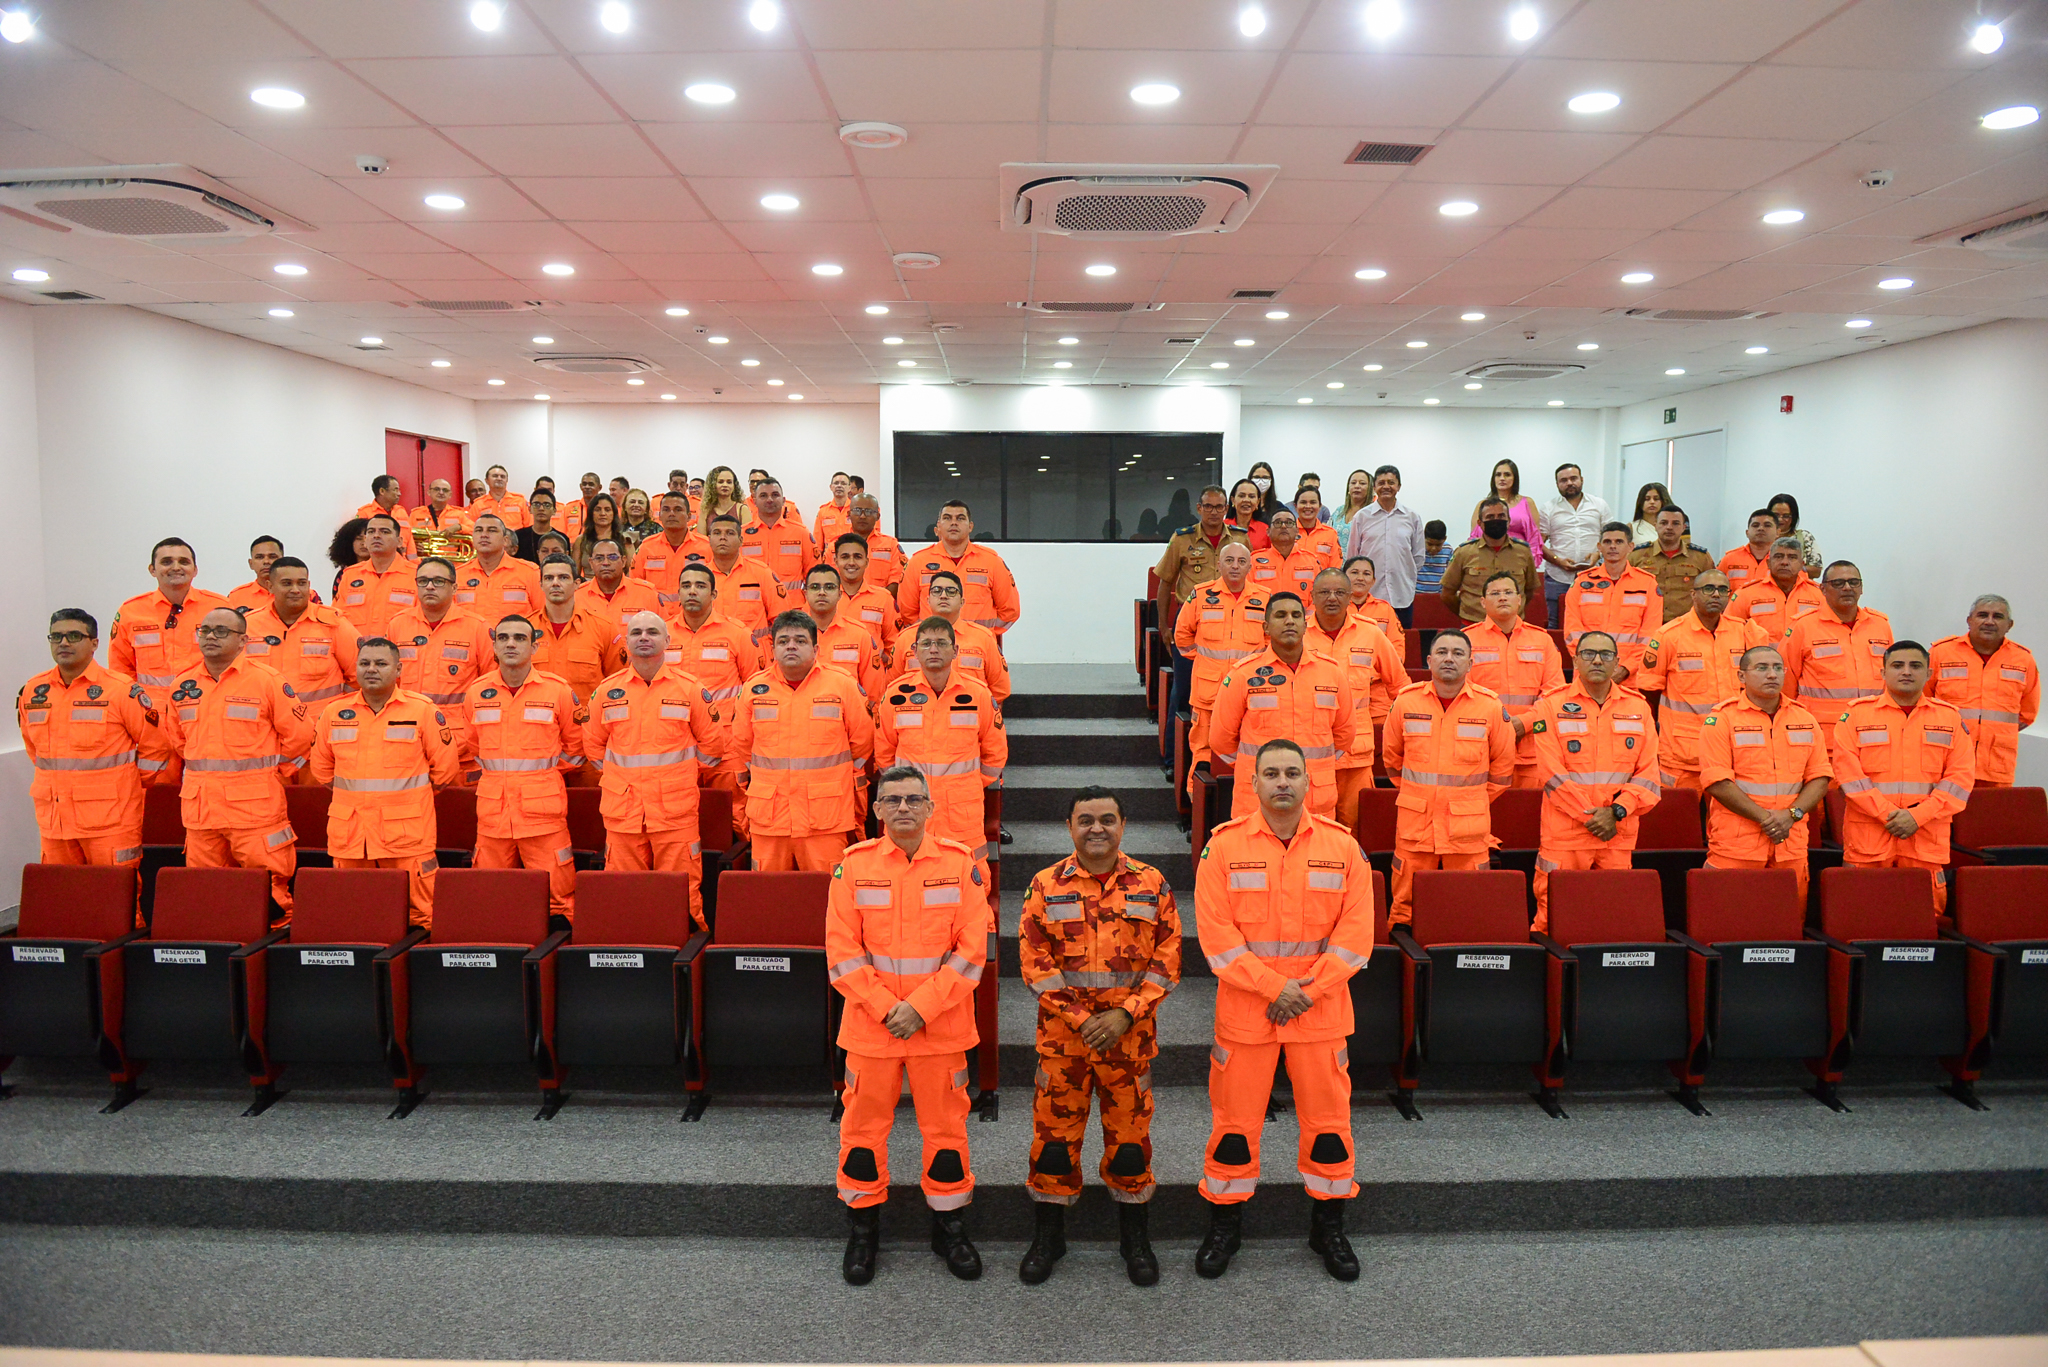 Corpo de Bombeiros do Ceará e Aesp formam nova turma de vistoriadores para o Comando de Engenharia de Prevenção de Incêndio (Cepi)